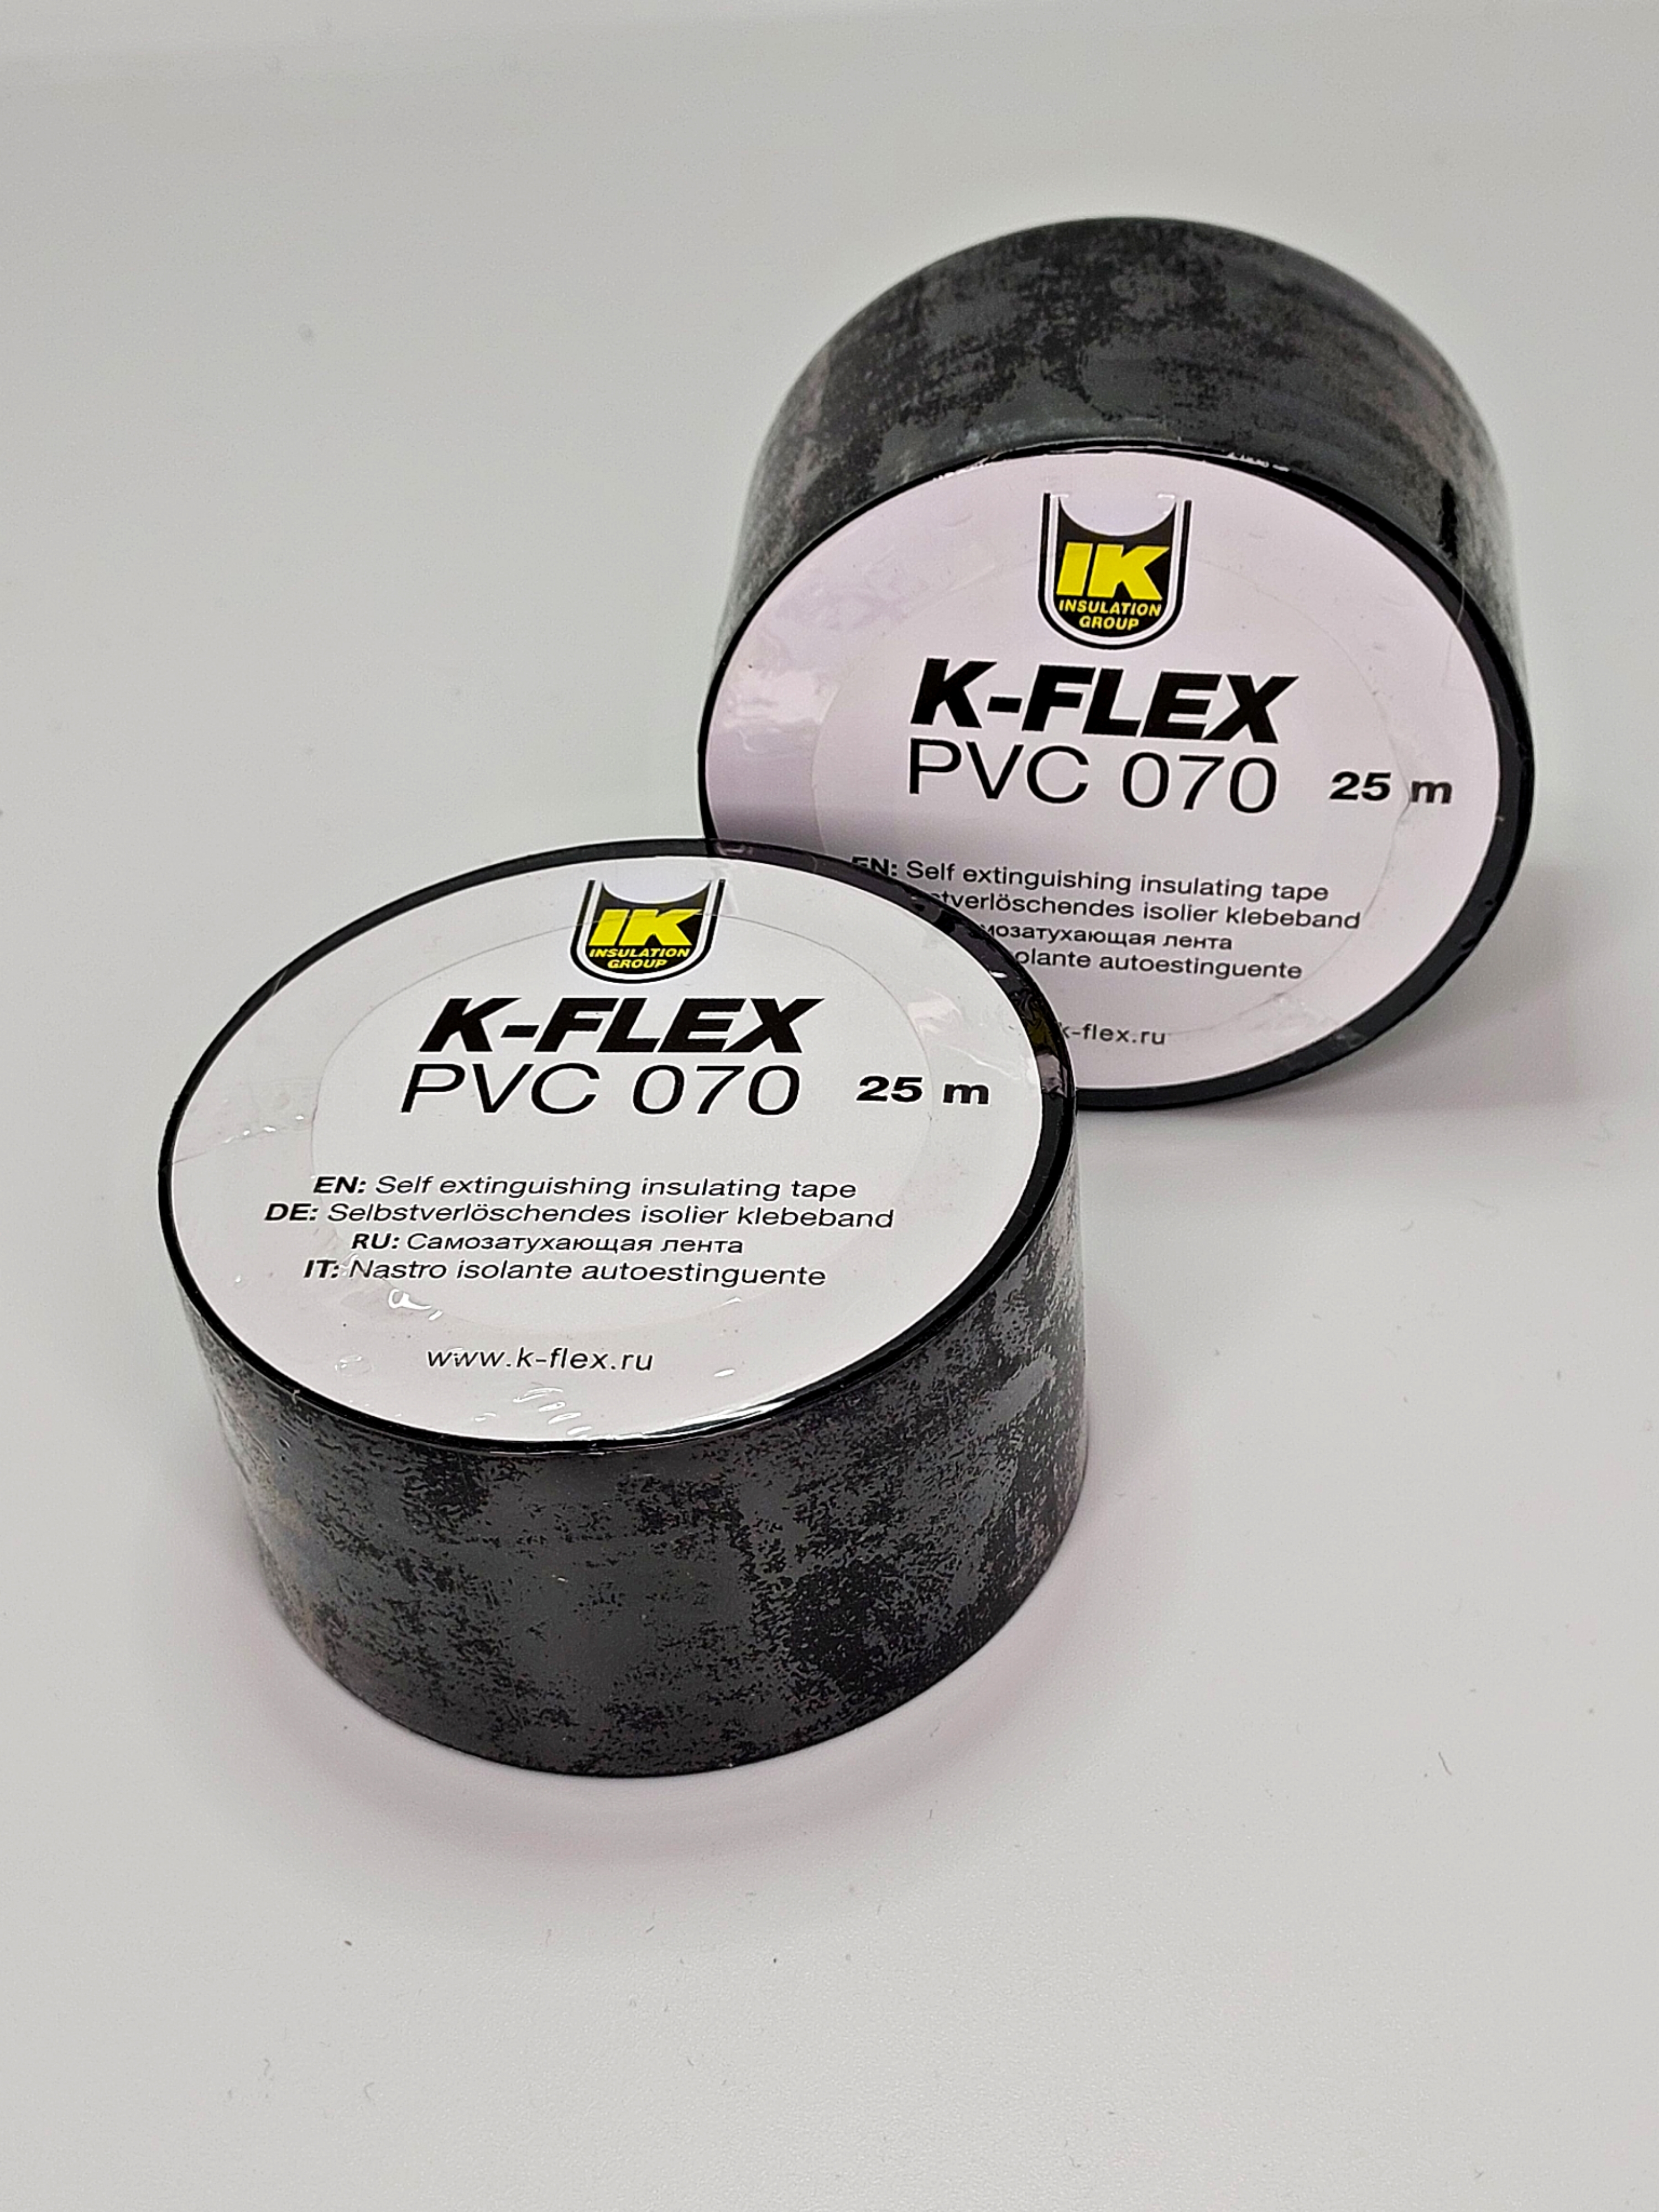 Клейкая лента k-Flex pvc070 (25м). Лента k-Flex 050-025 PVC at 070 Black. Лента k-Flex 038-025 PVC at 070 Black. Лента k-Flex PVC at 070 38мм*25м черная (уп=24шт).